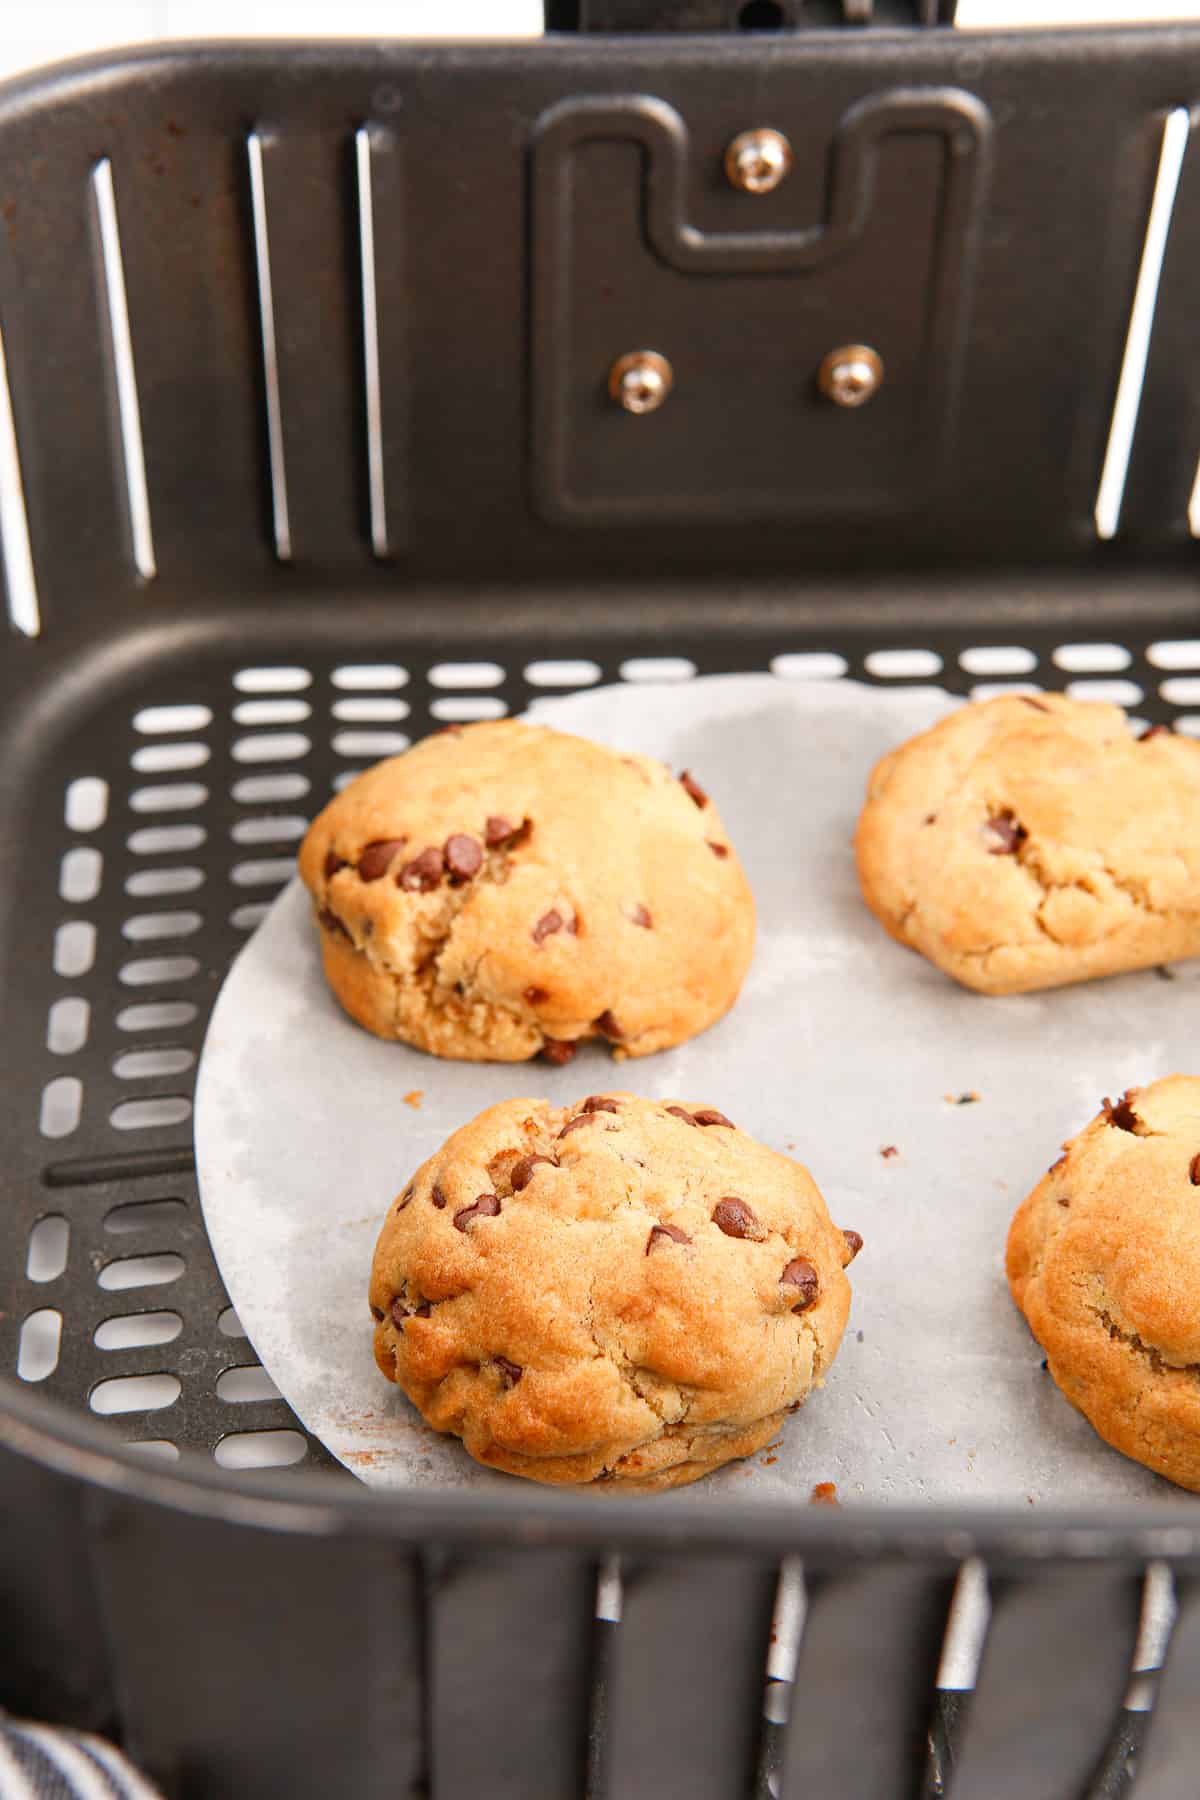 Chocolate chip cookies in air fryer basket.